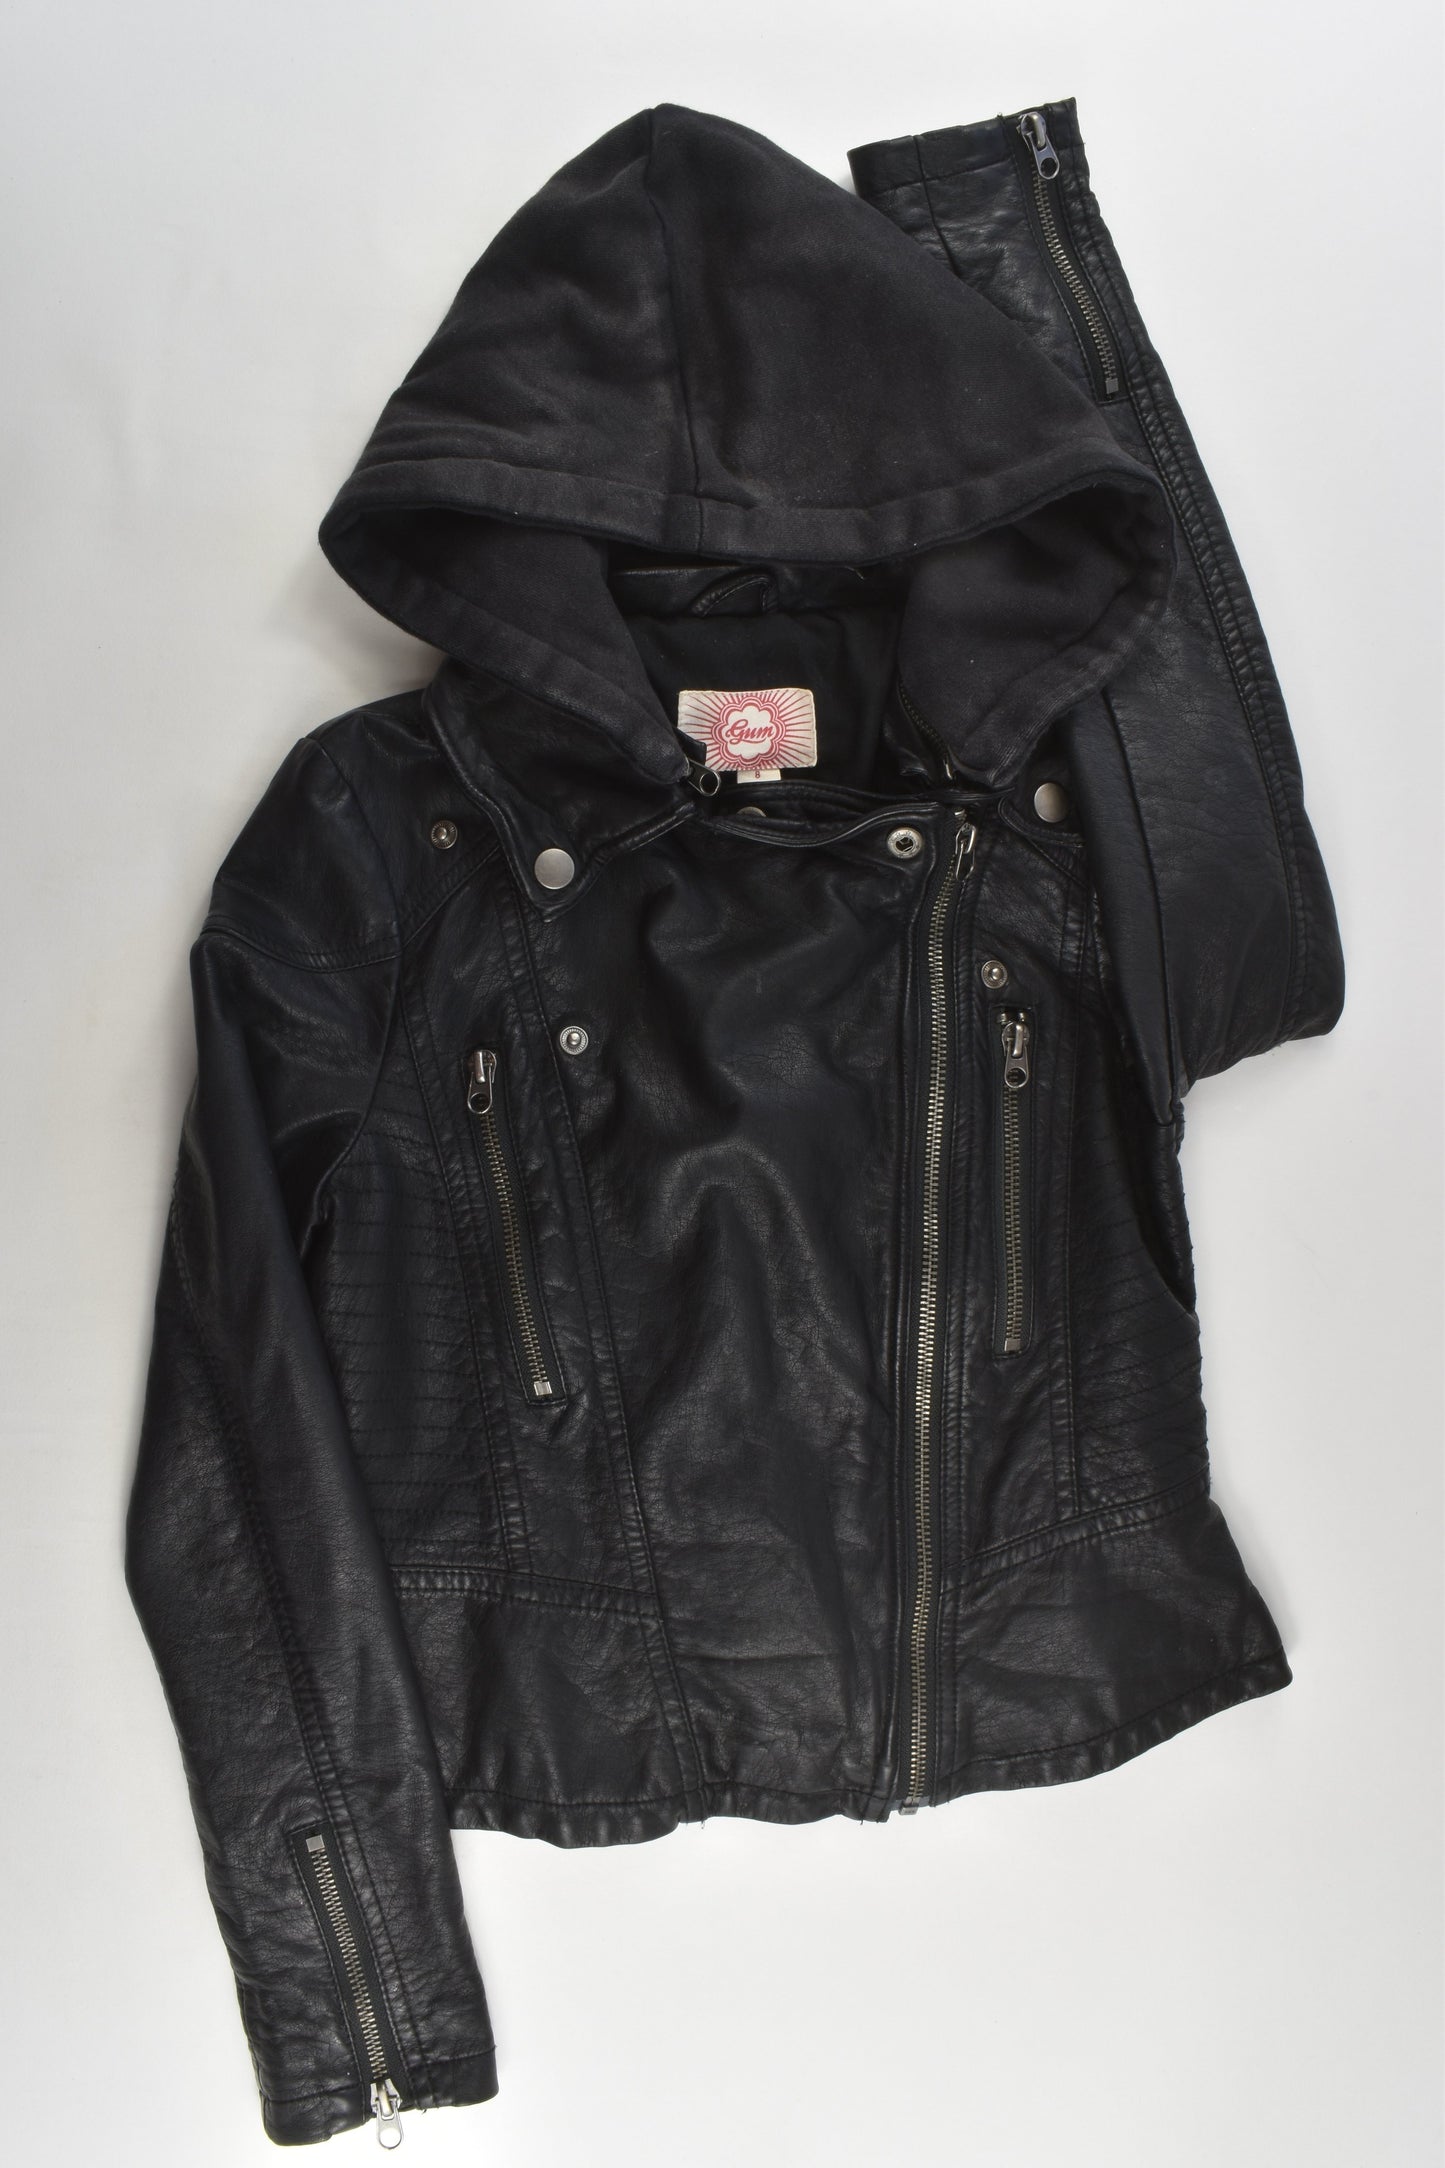 Gum Size 8 Leather-like Jacket